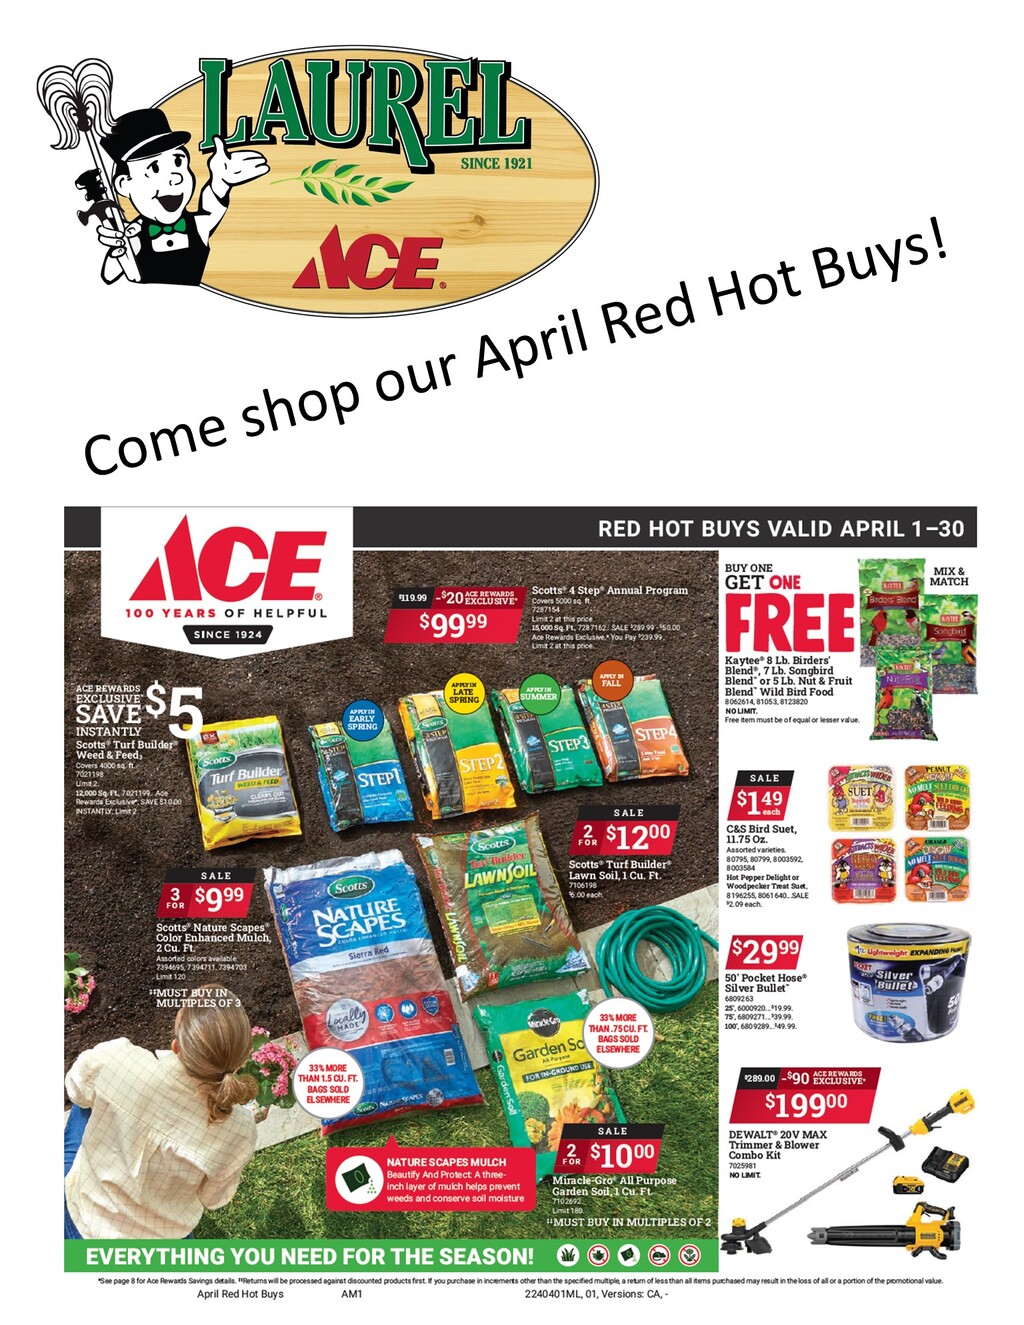 Laurel Ace Hardware Ace Red Hot Buys  Valid April 1 30 promotion flier on Digifli com